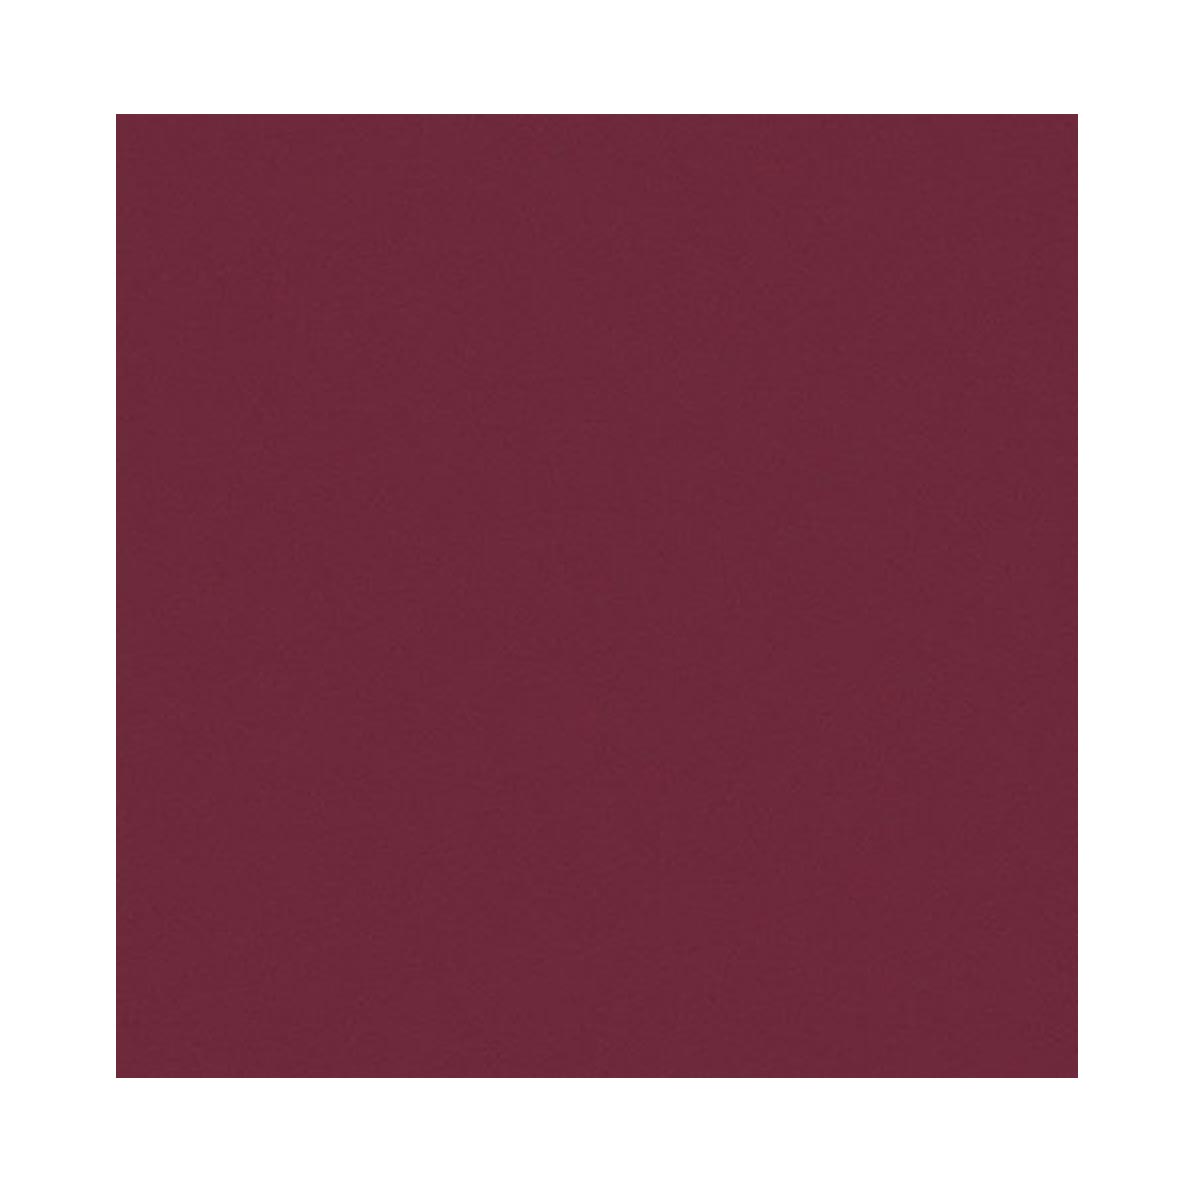 Clairefontaine Pastelmat - Wine 50 cm x 70 cm, 360 gsm